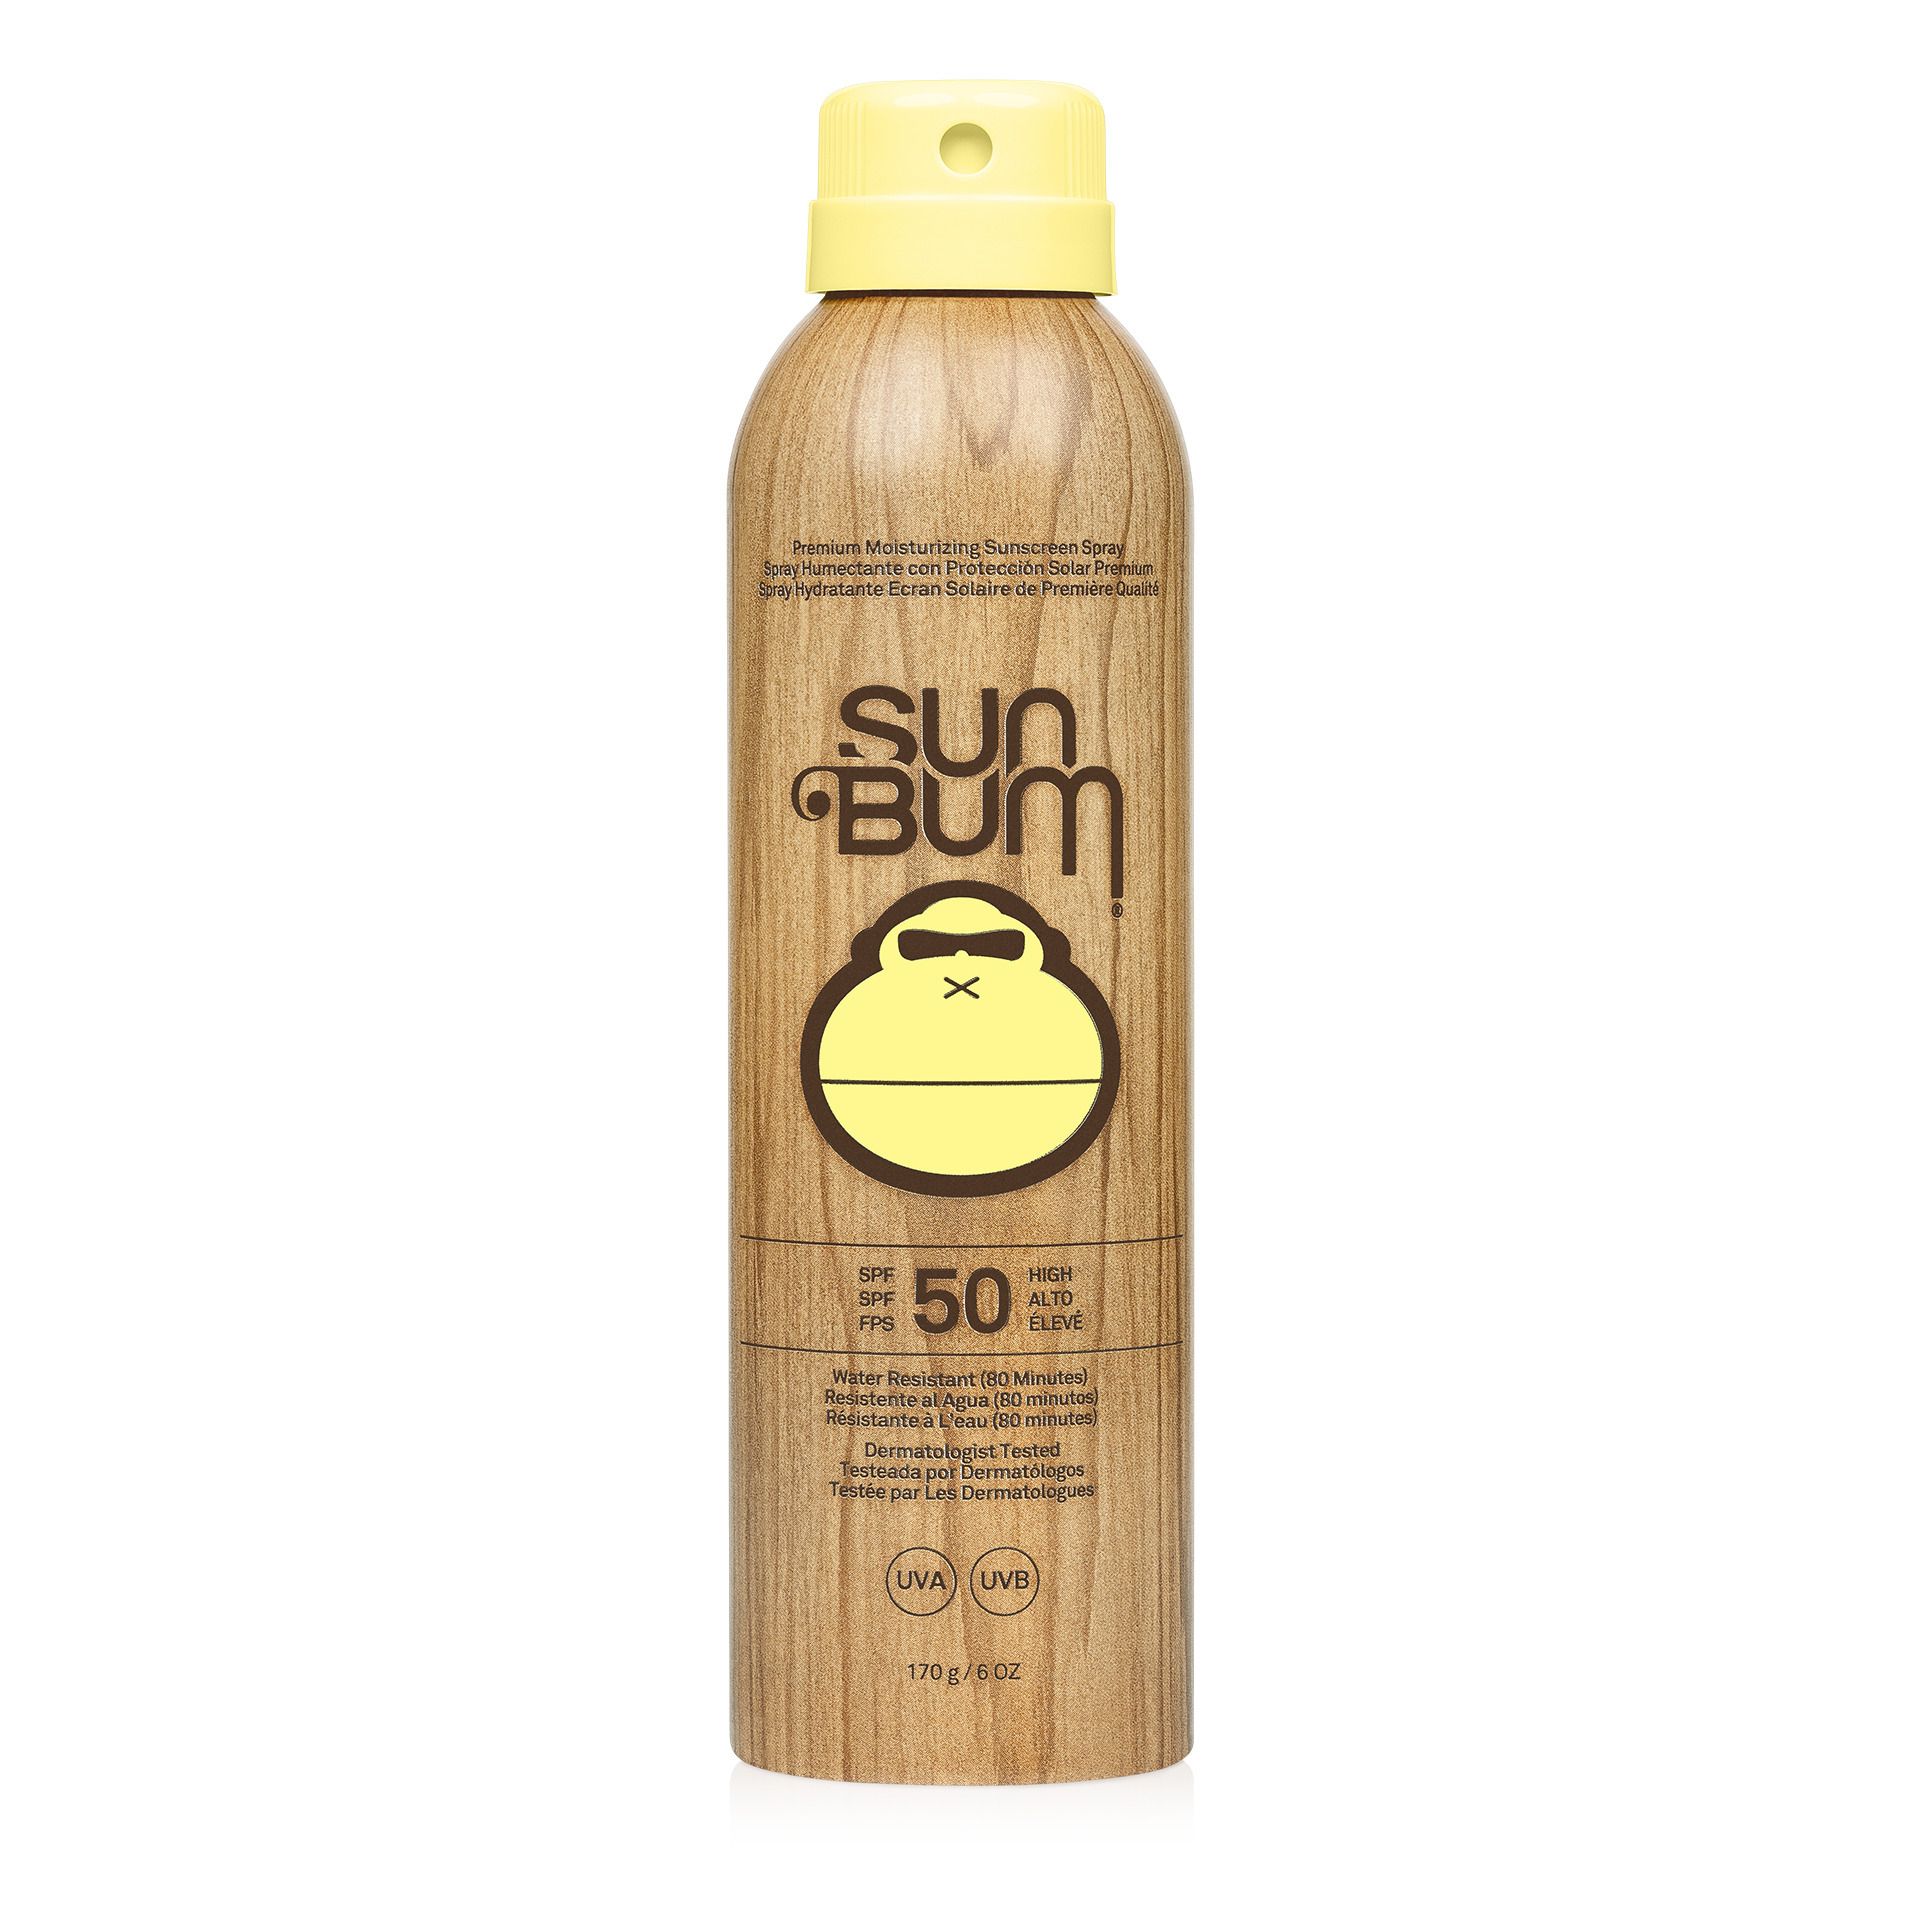 Sunbum - Spray solaire corps Orginal SPF 50 - 170g - Beige